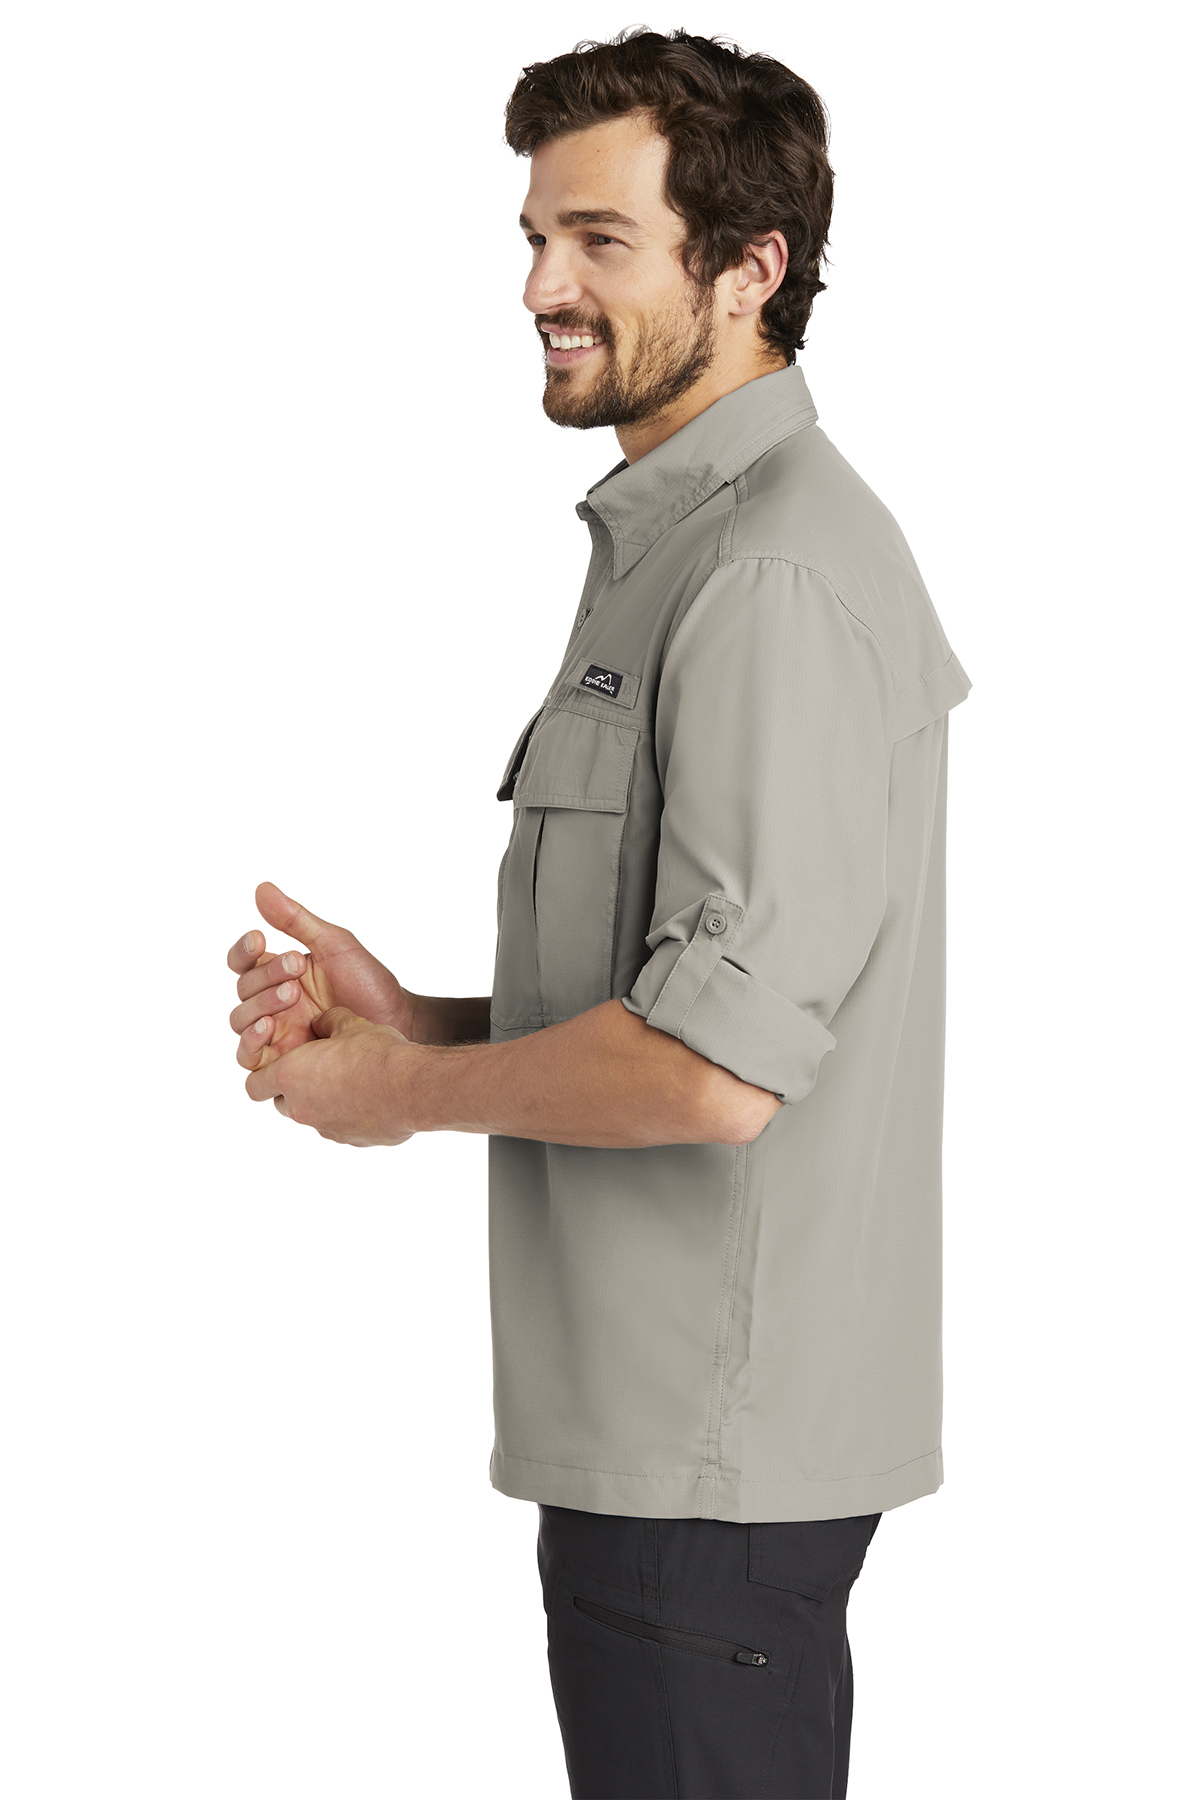 Eddie Bauer EB606 Long Sleeve Fishing Shirt 